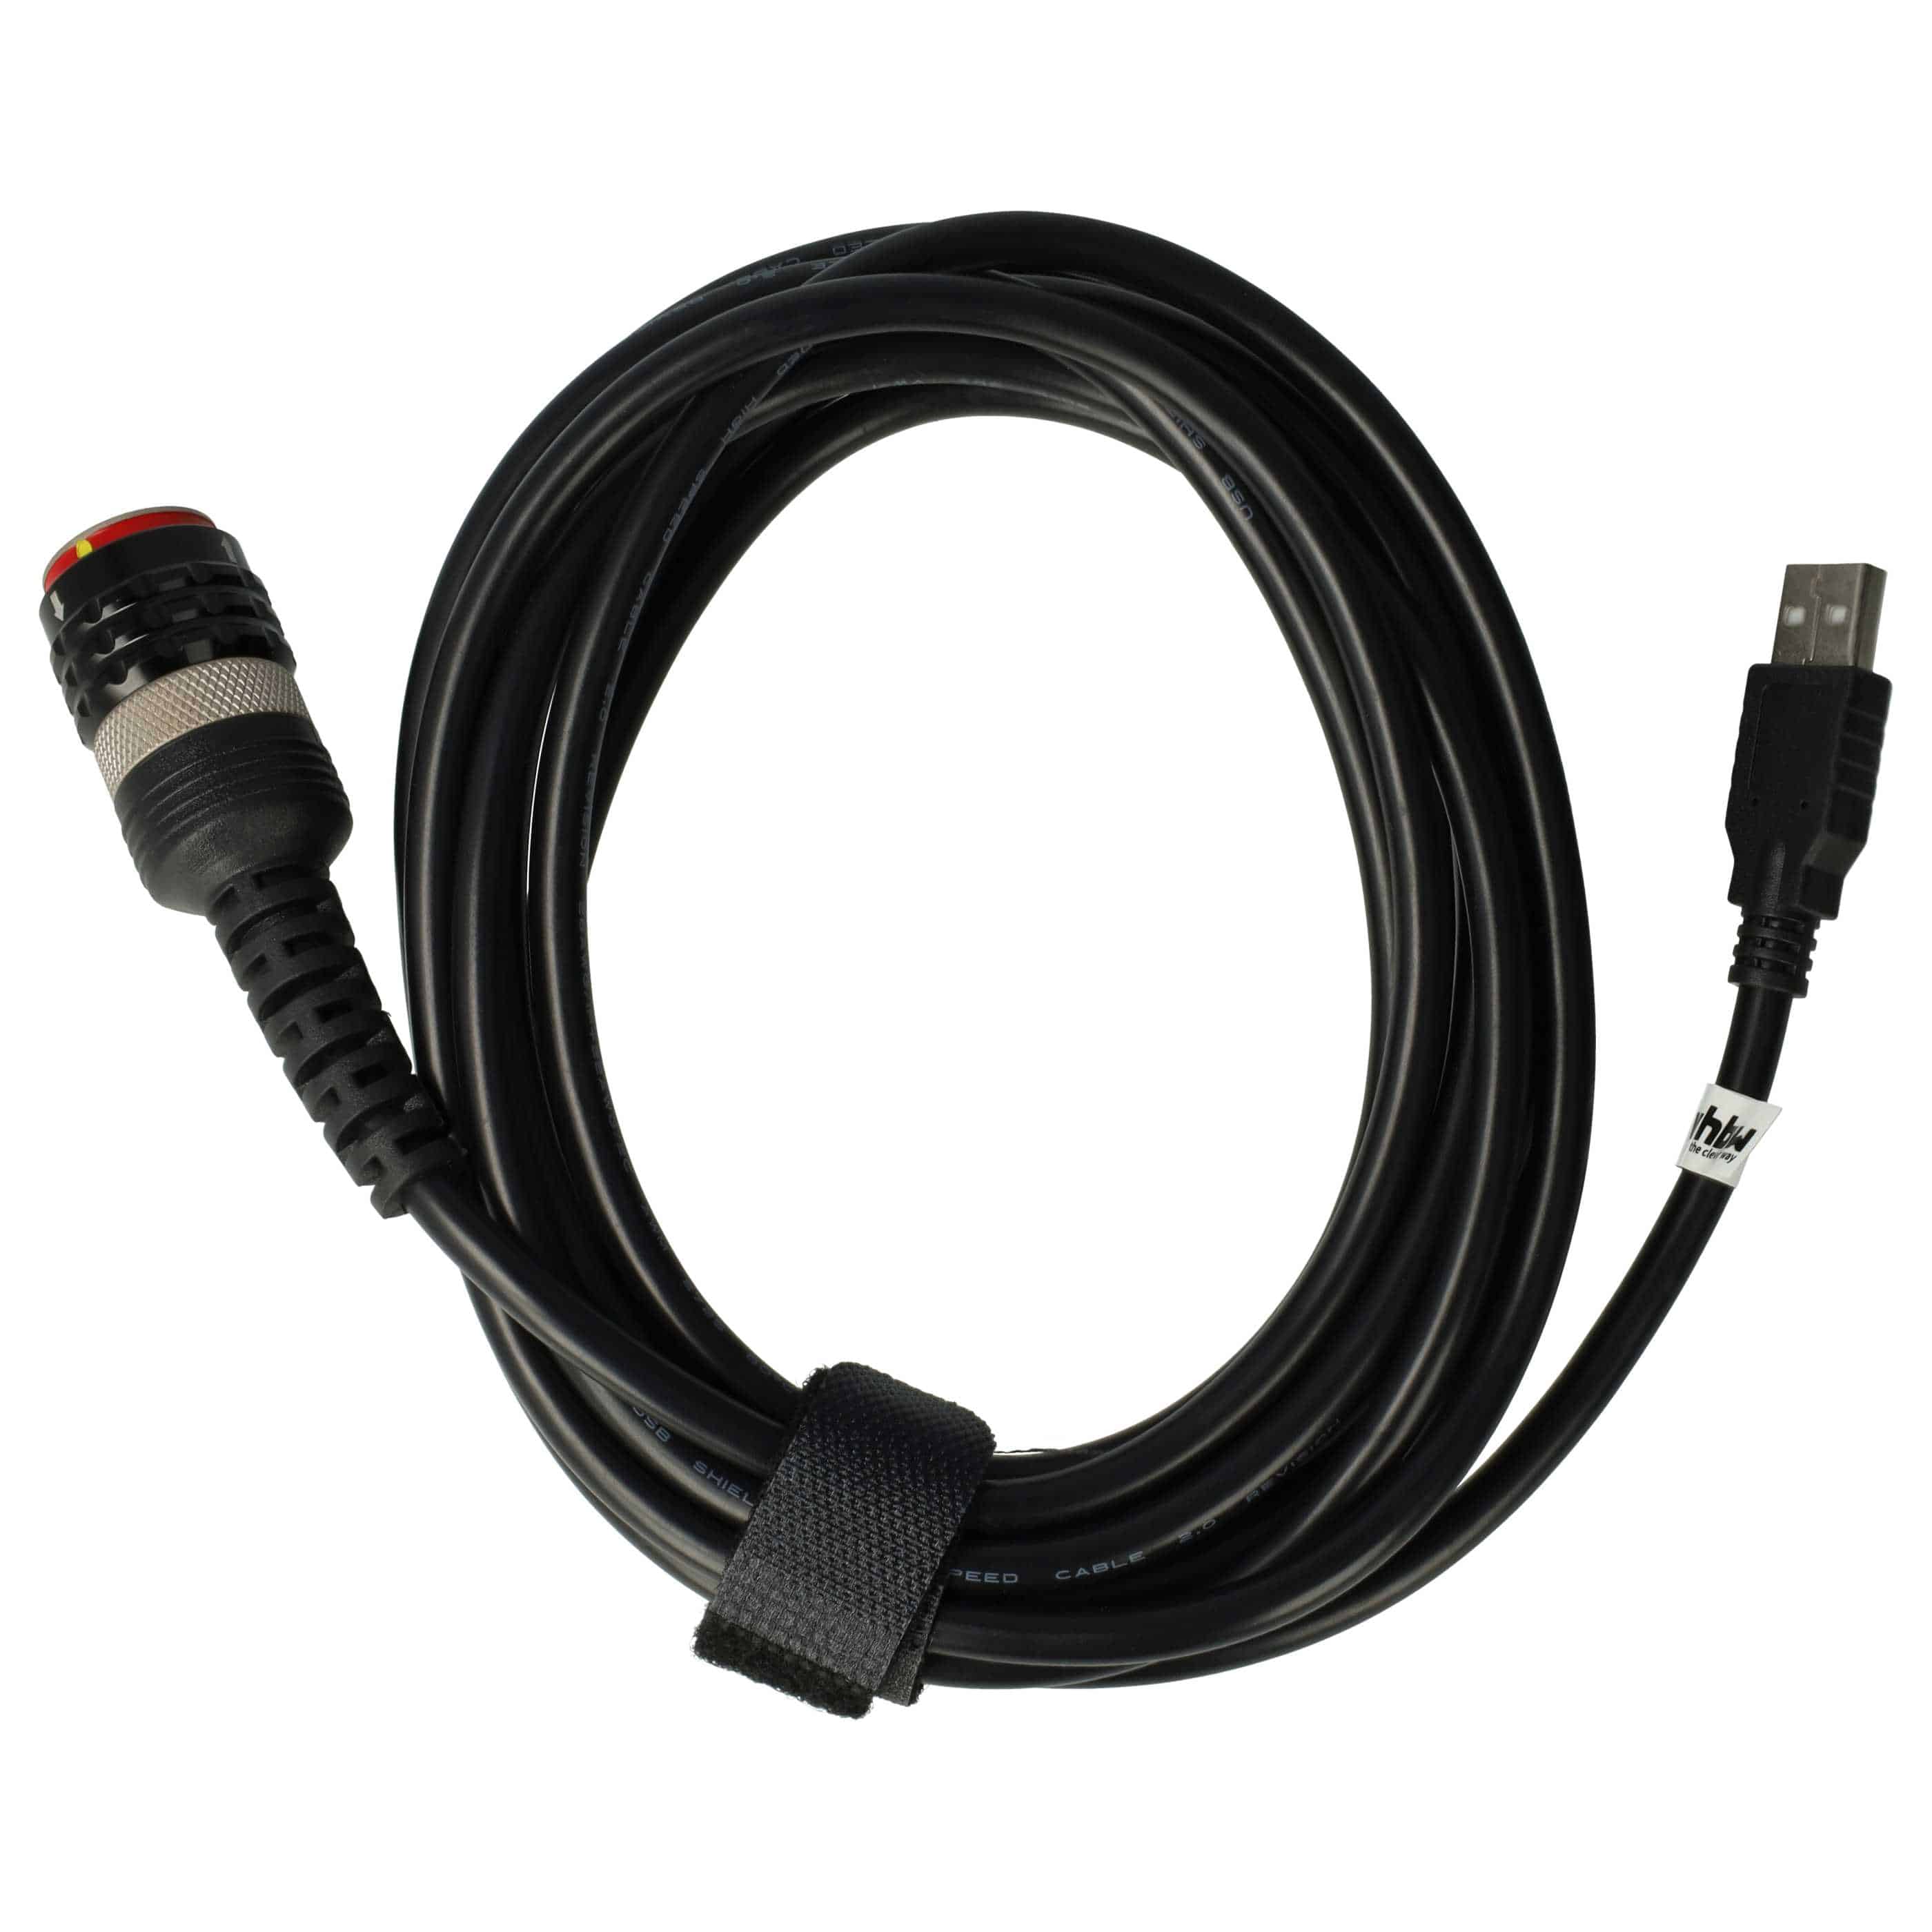 USB-Adapterkabel passend für Volvo Vocom 2 Kfz-Diagnosegerät - 390 cm